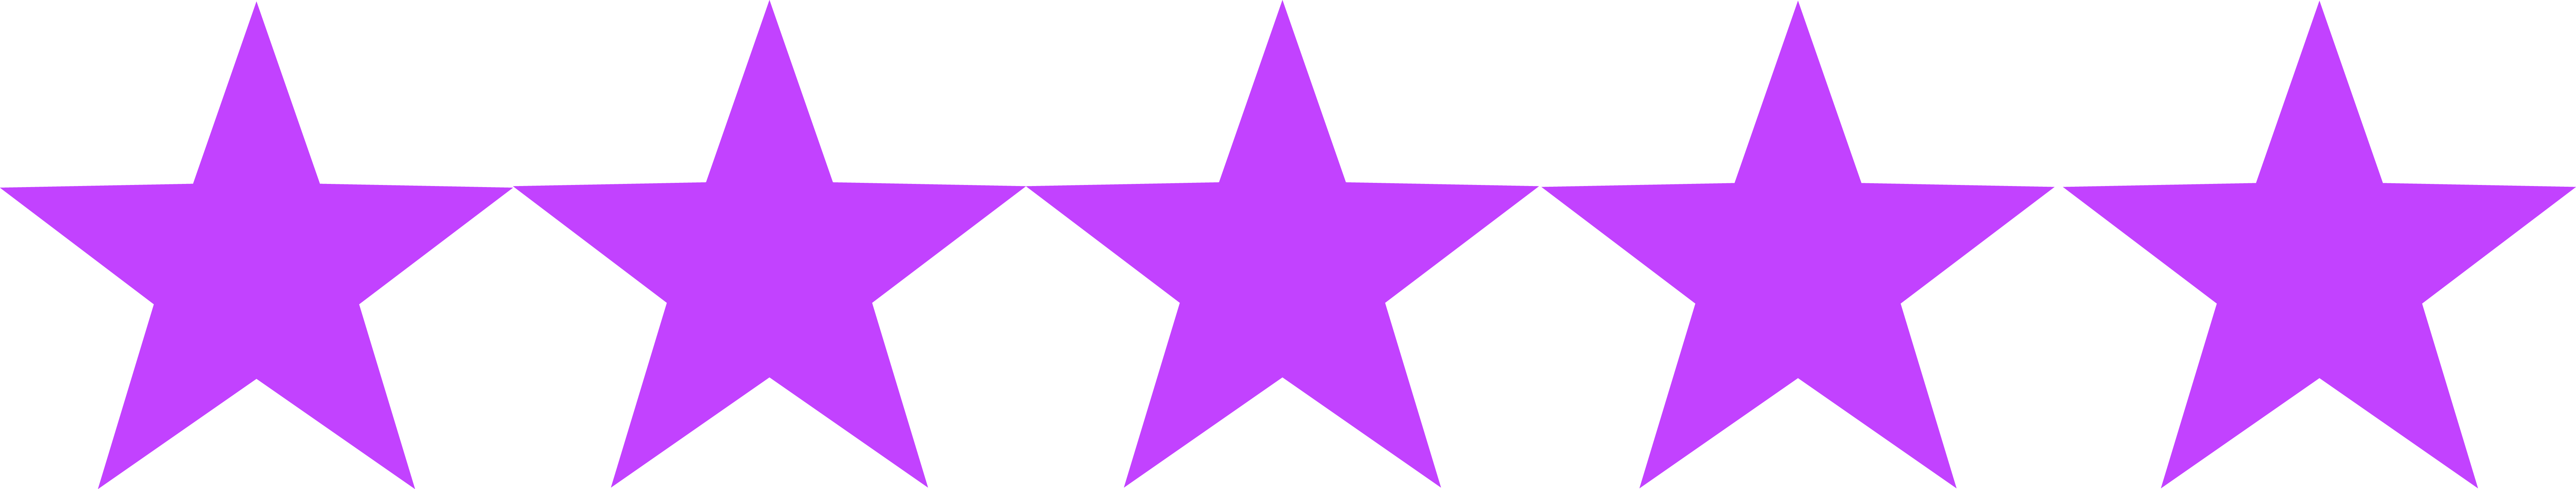 Поставь 8 звезд. Сиреневые звезды. Пять звезд. Фиолетовая звезда на белом фоне. Фиолетовые звездочки.